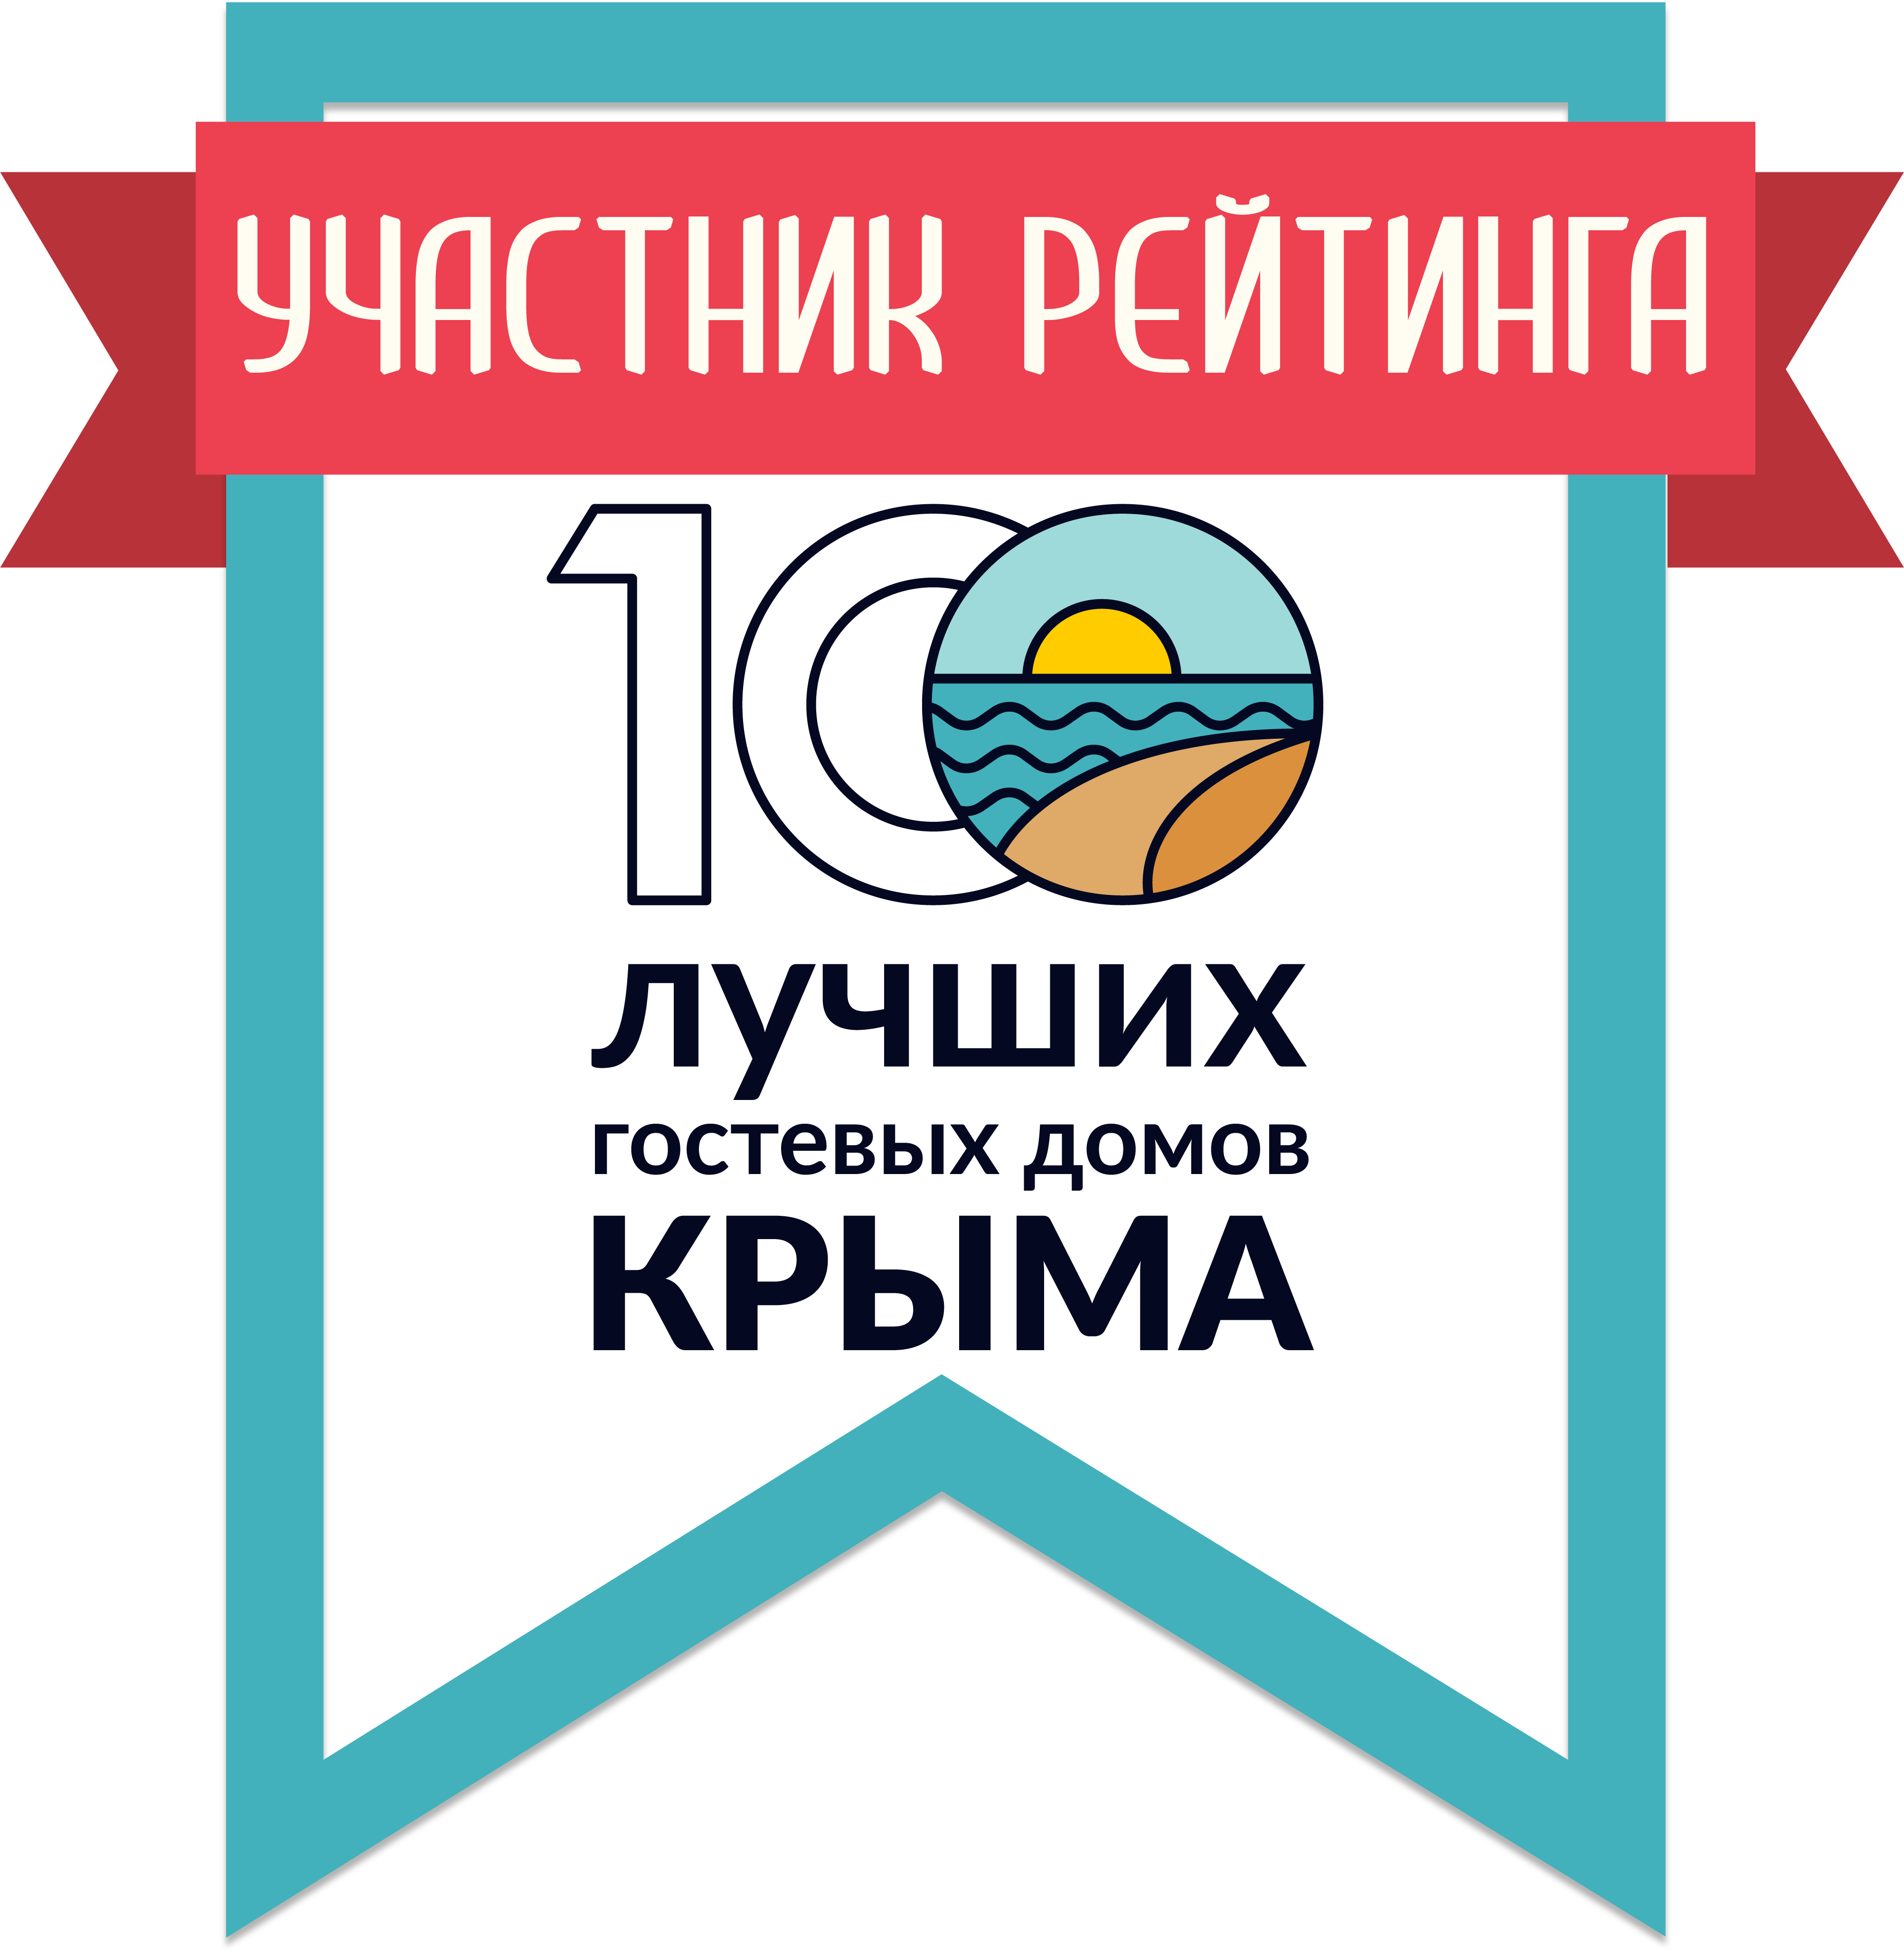 Участник рейтинга 100 лучших гостевых домов Крыма